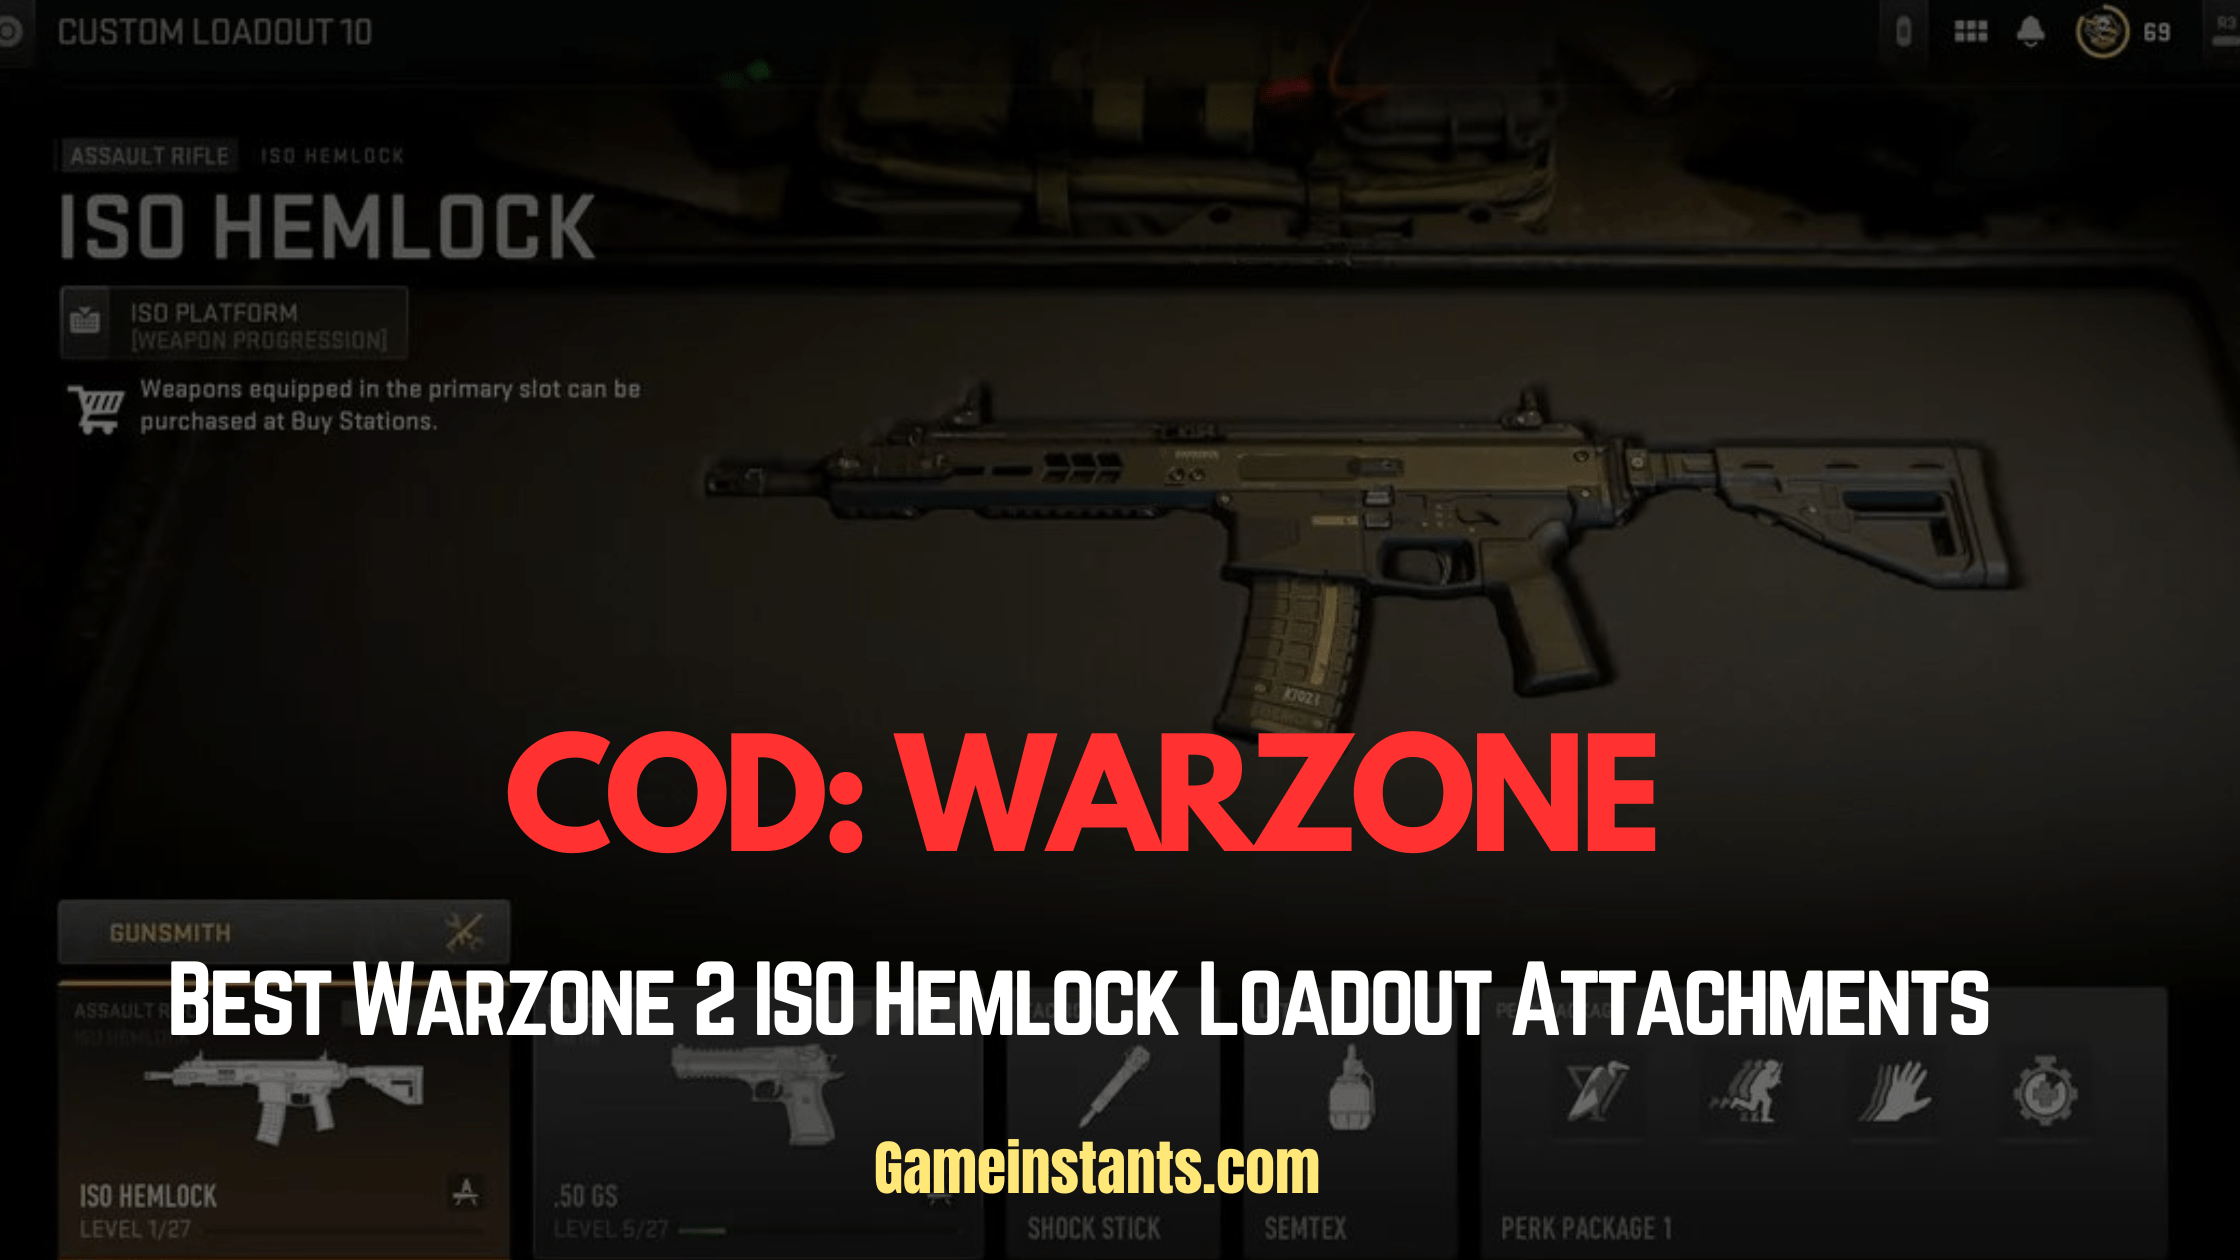 Best Warzone 2 ISO Hemlock Loadout